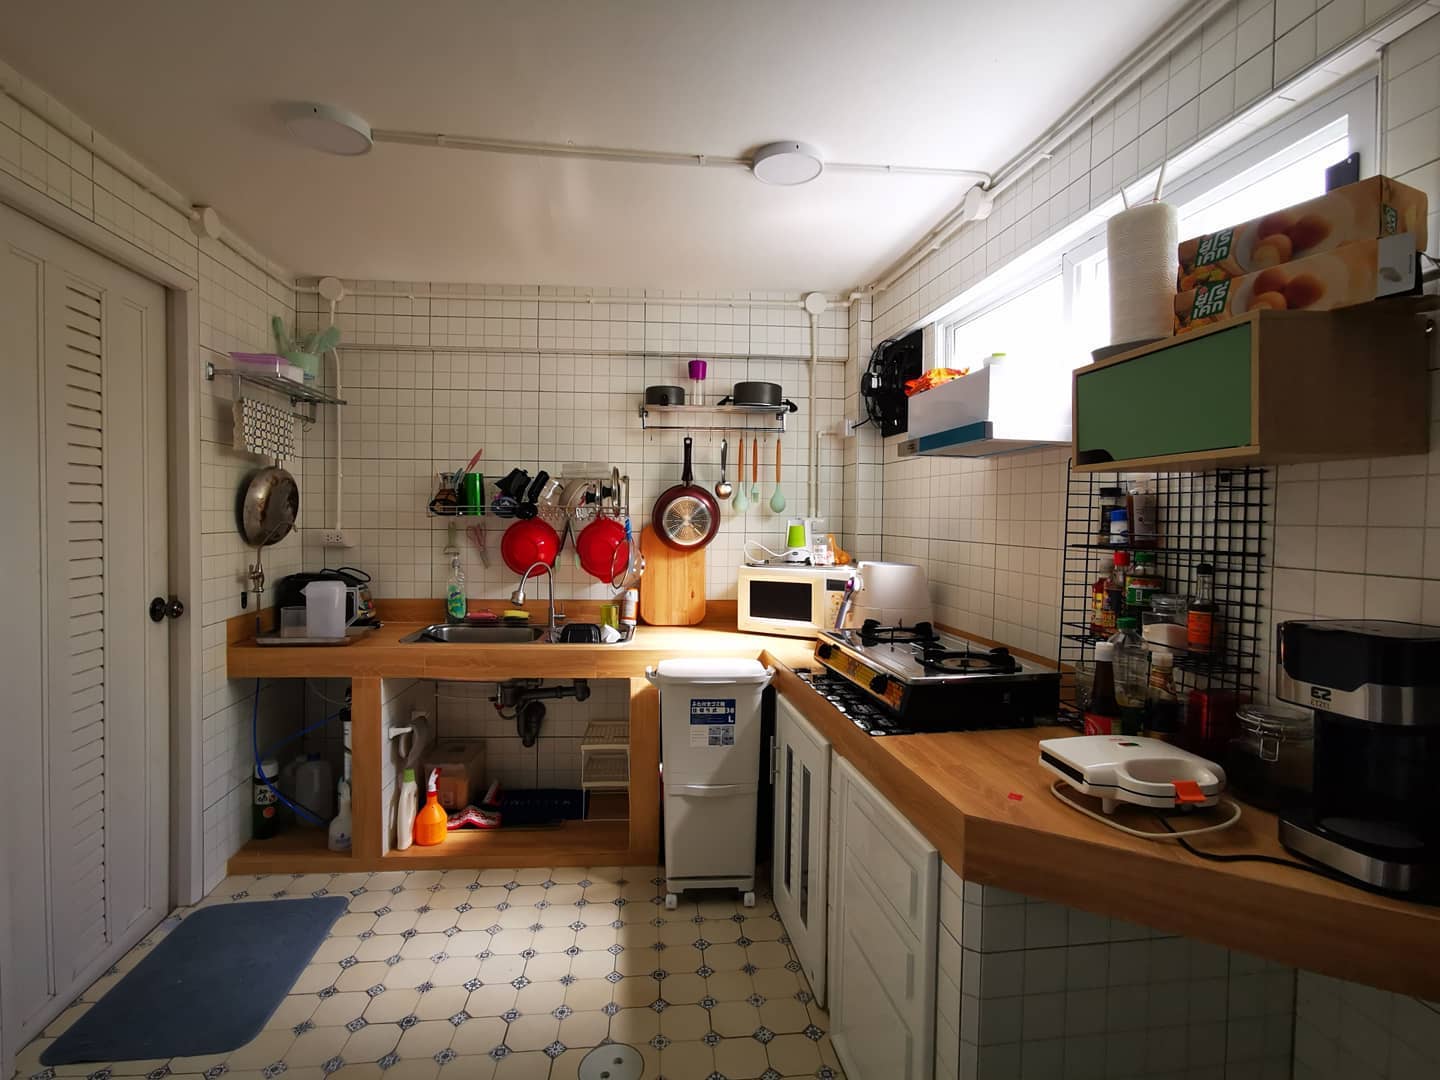 วิธีเลือกตู้เก็บของ  ห้องครัว  ด้วยอุปกรณ์จัดเก็บจาก GIO ให้ดูแลความสะอาดในห้องครัว  